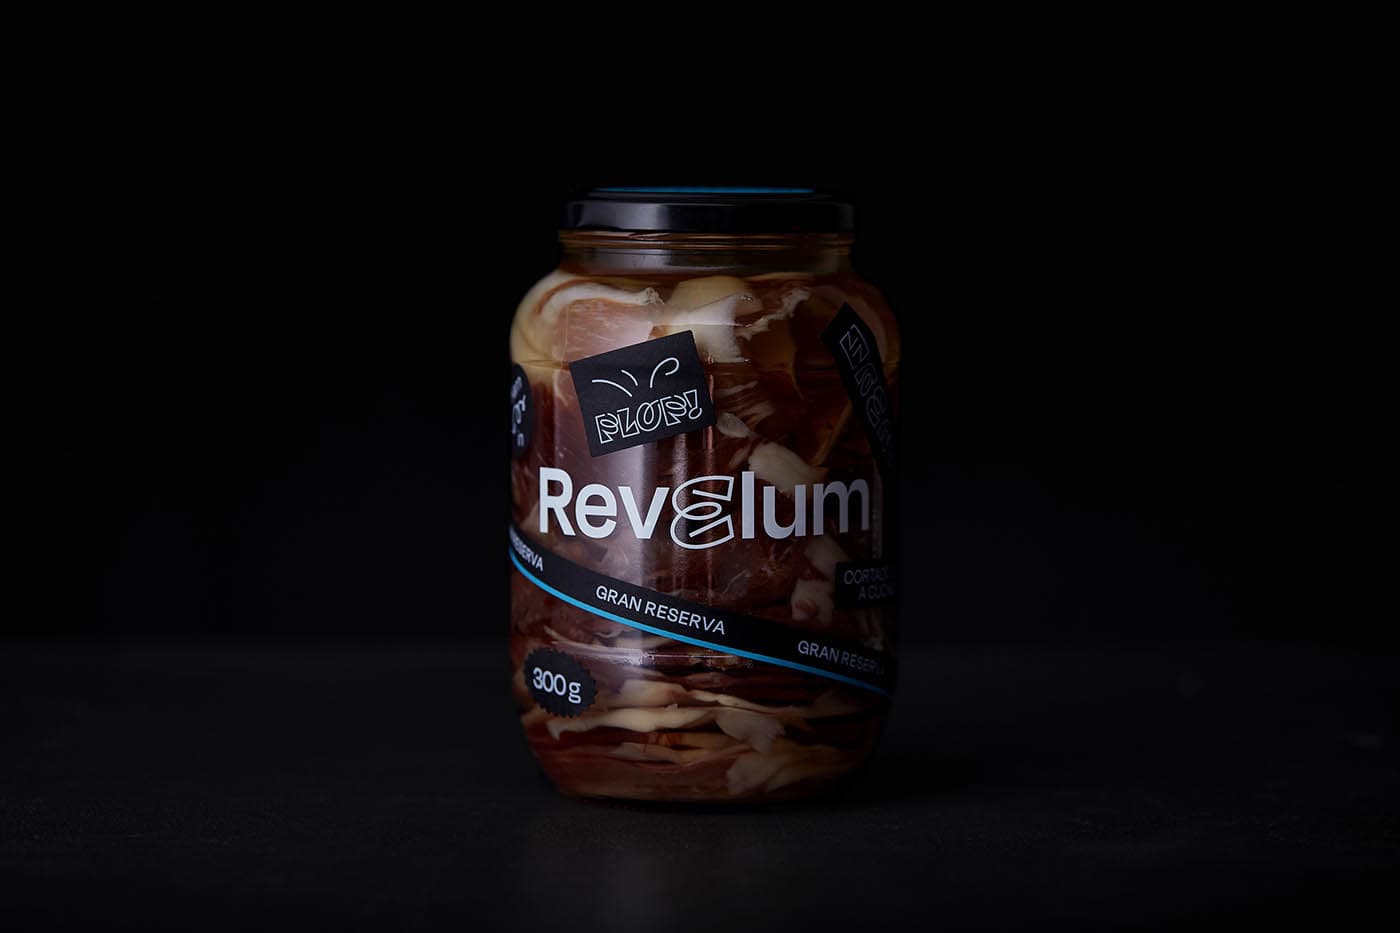 Diseño de branding, packaging y digital, incluido ecommerce, para marca de jamón conservado en aceite